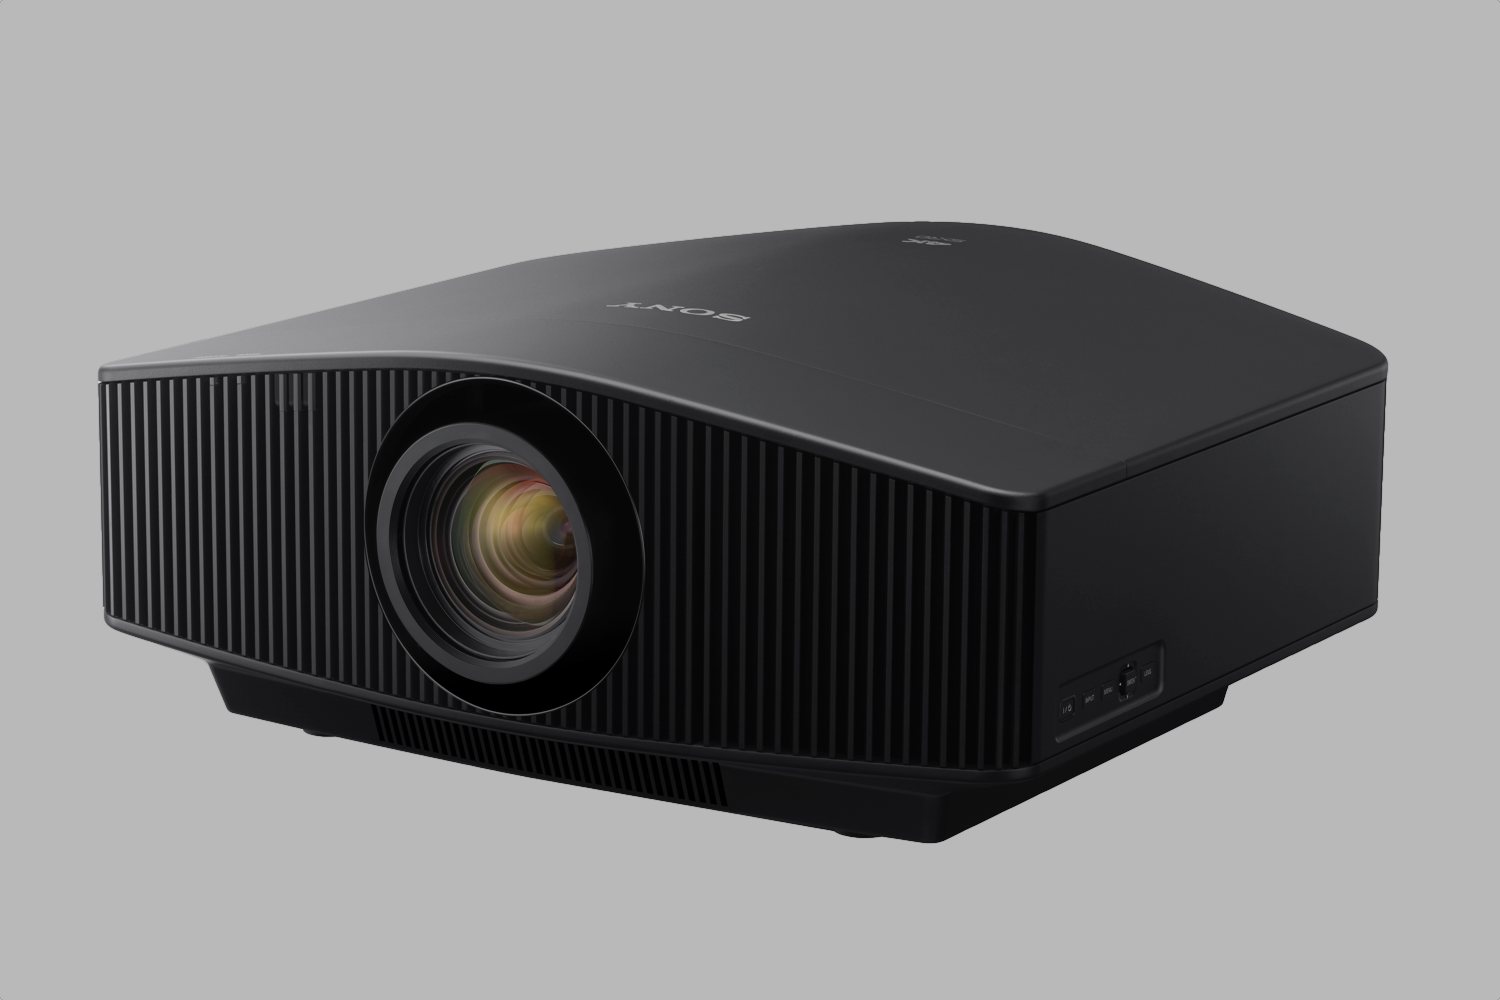 sony imax enhanced projectors tvs cedia 2018 vpl vw995es